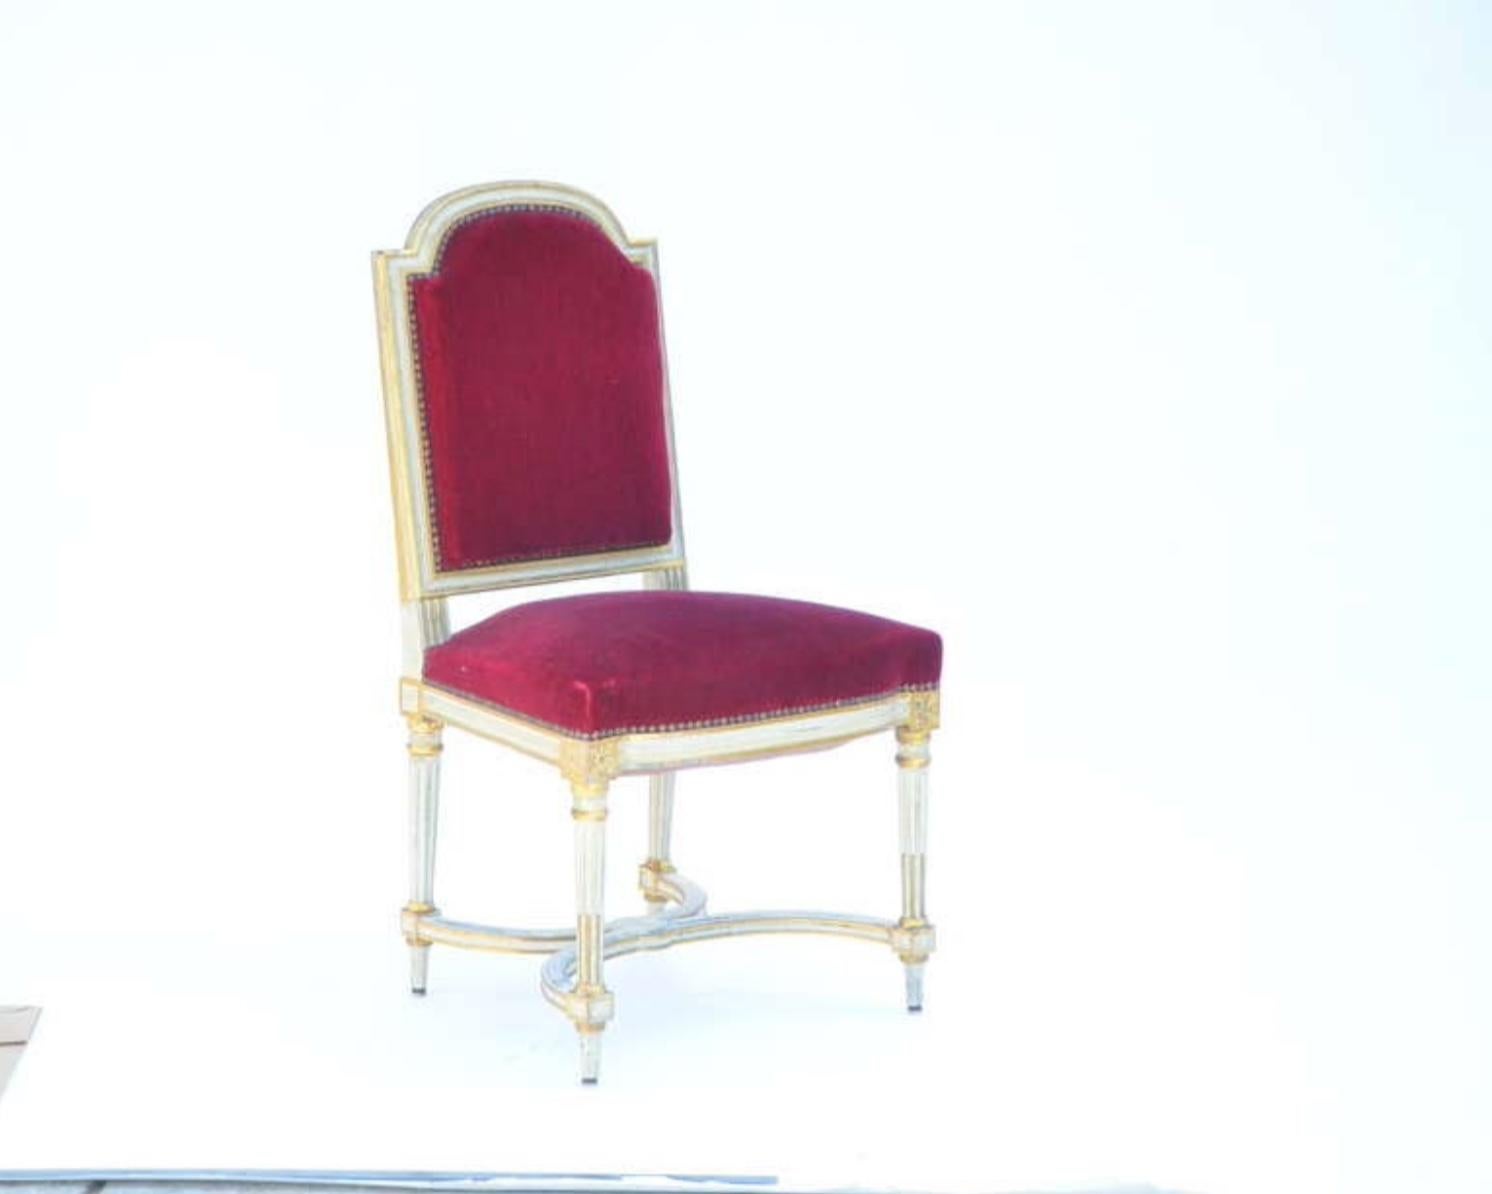 5 Stühle aus rotem, schickem karminrotem Samt im Stil von Maison Jansen. Sehr robust und bequem. Die Originalpolsterung ist alt, aber in gutem Zustand. Sie können auch mit C.O.M. neu gepolstert werden.